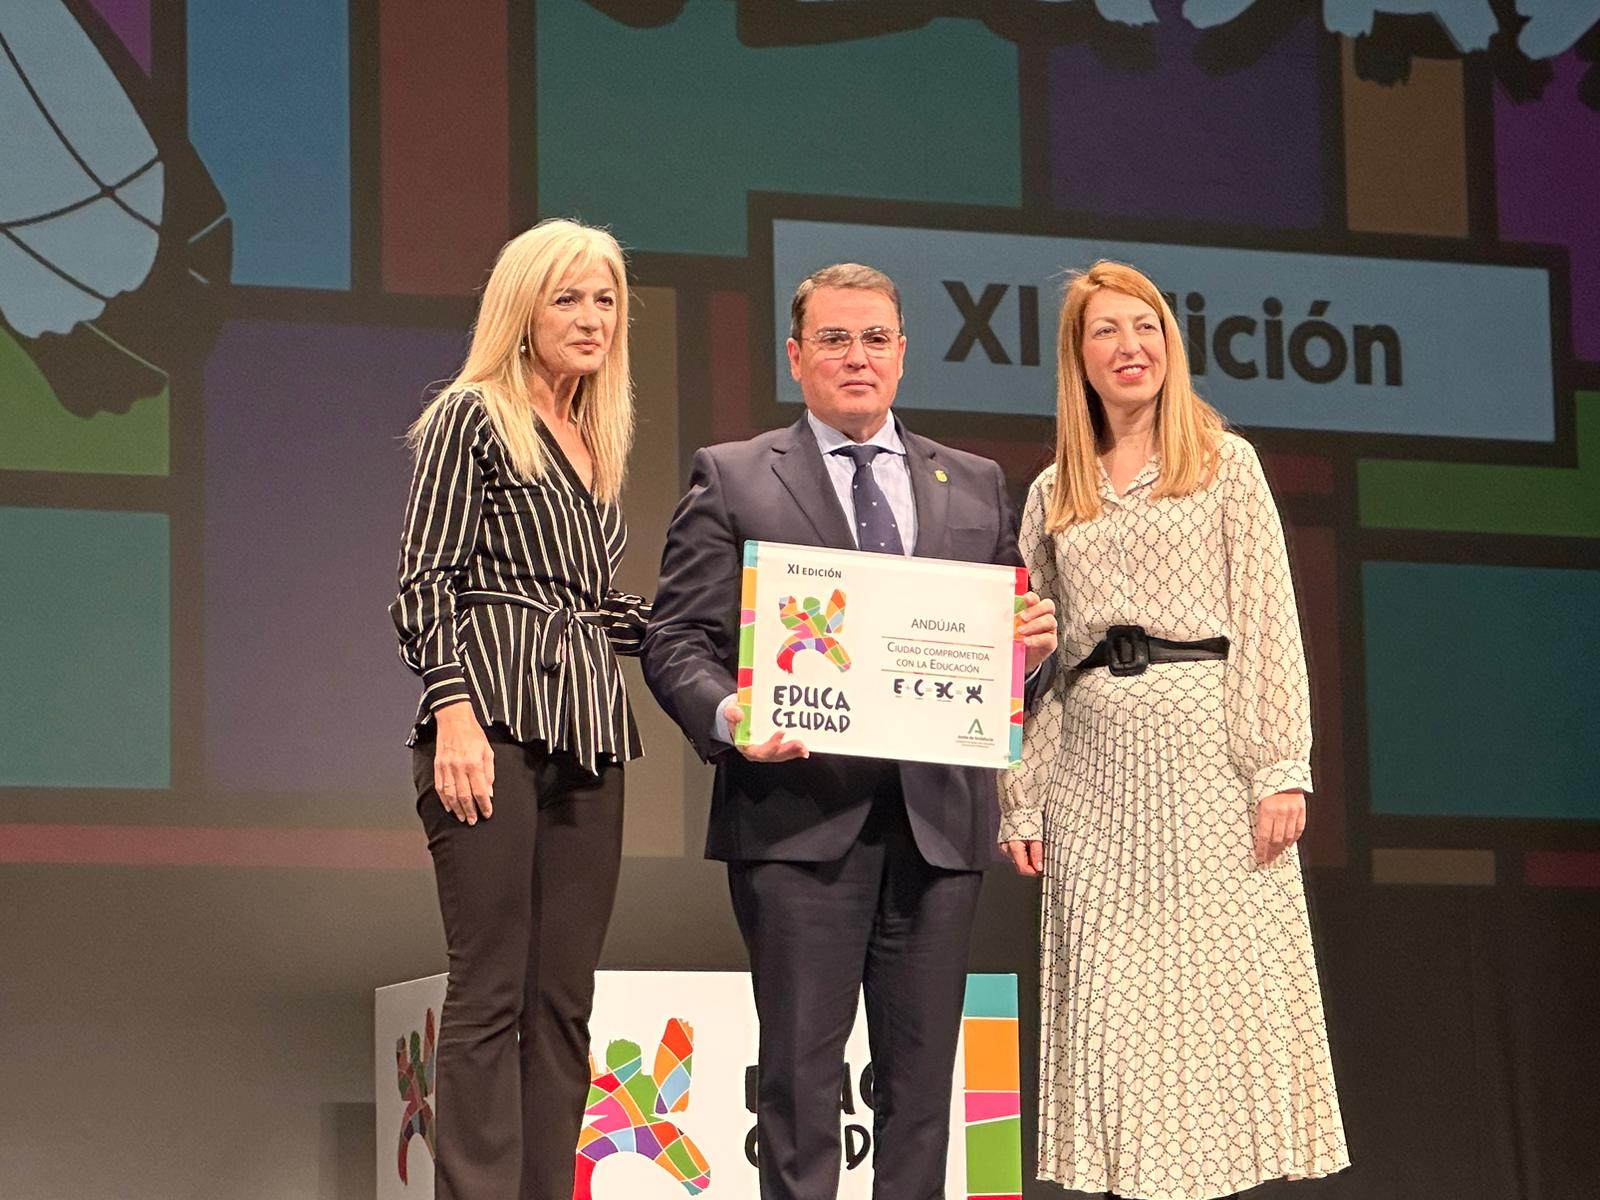 El Ayuntamiento de Andújar recibe el premio «Educaciudad» por su compromiso con las políticas de educación